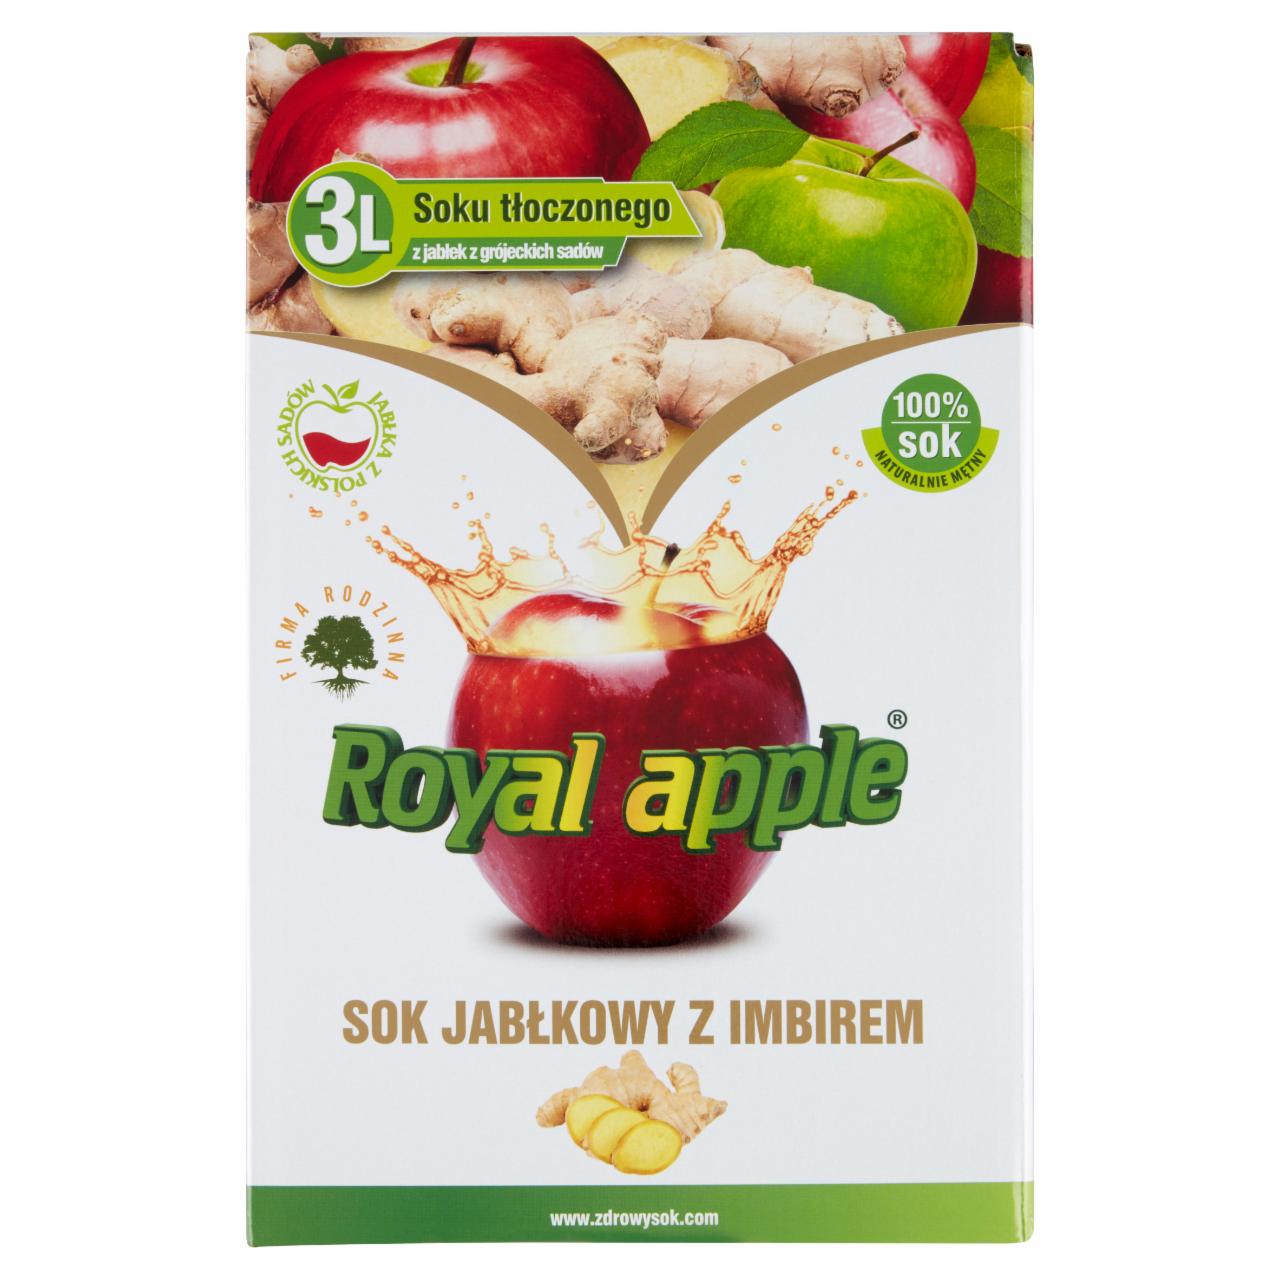 Zdjęcia - Royal apple Sok jabłkowy z imbirem 3 l